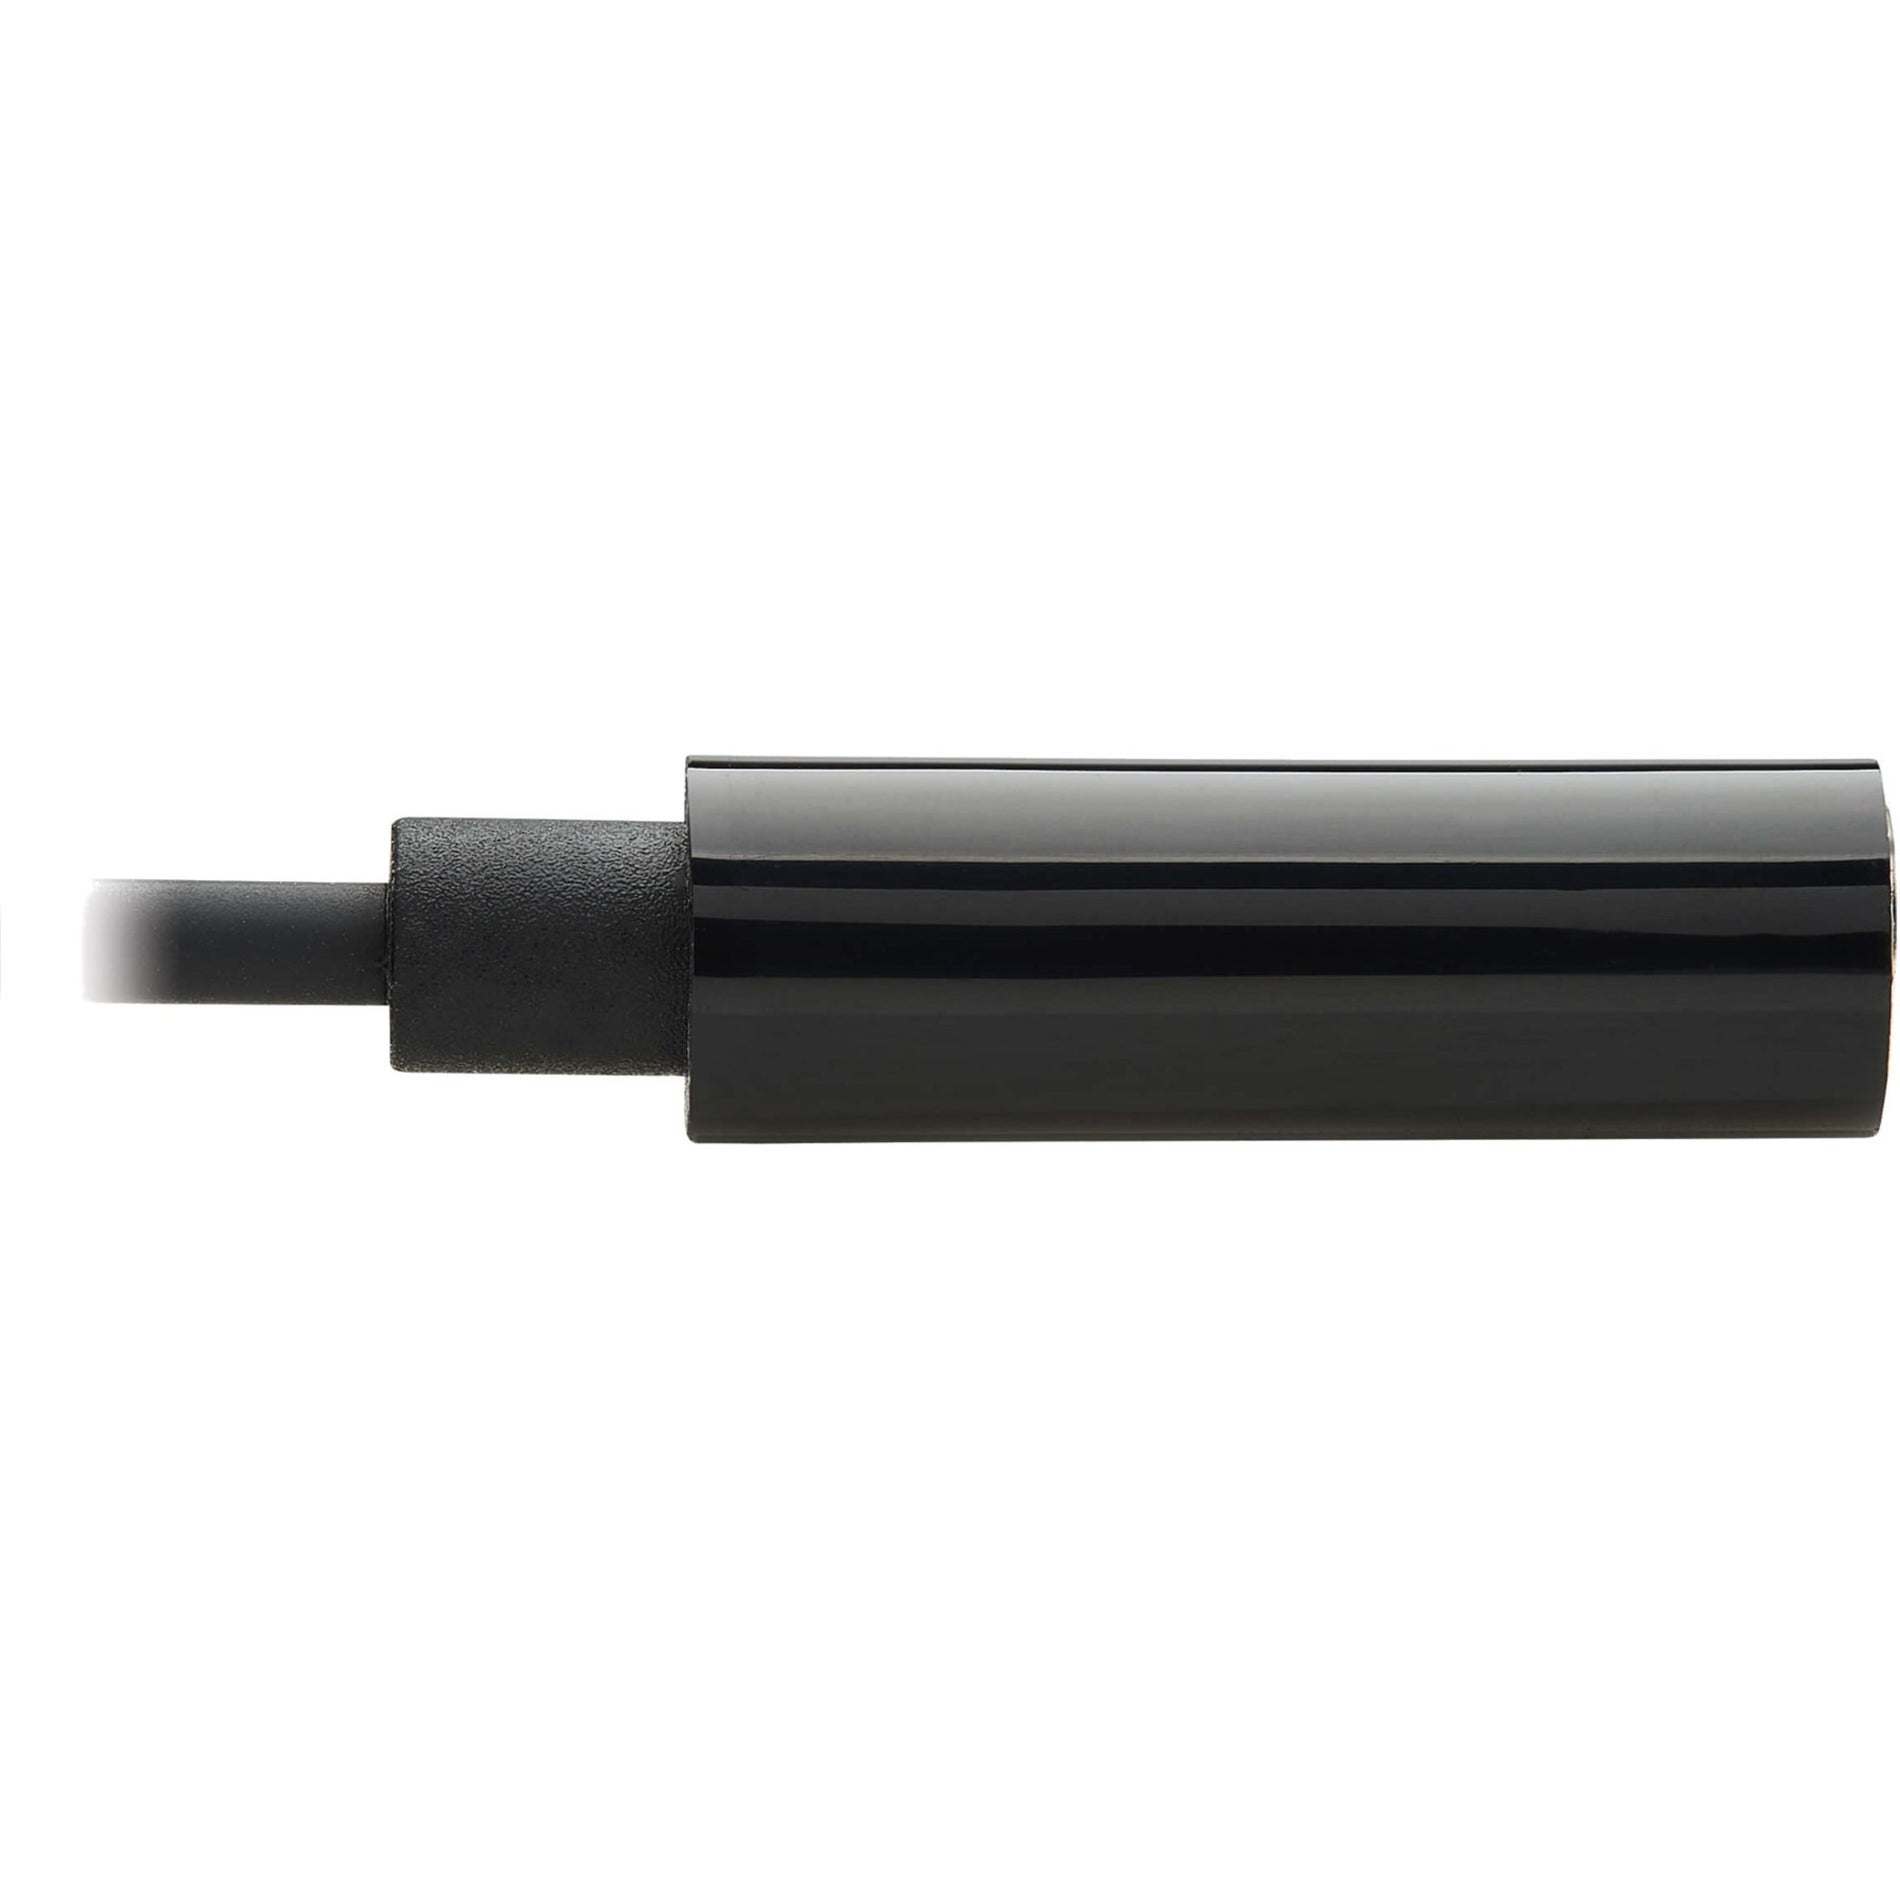 特力宝 U437-001 USB-C 到 3.5 毫米耳机插头适配器，即插即用，7.92英寸电缆，黑色 特力宝